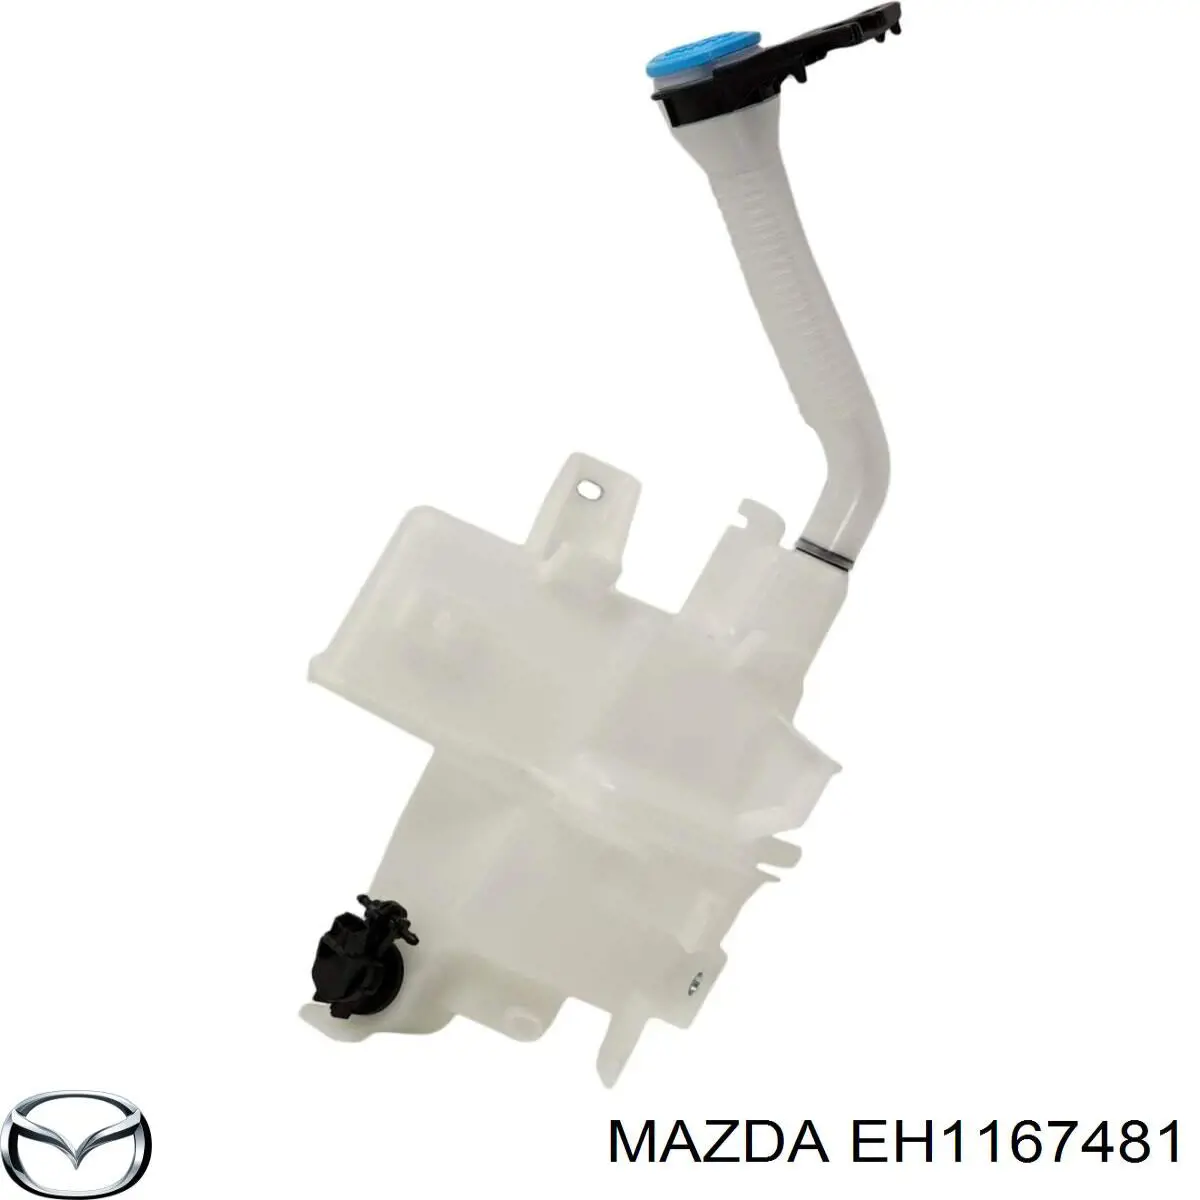 EH1167481 Mazda tanque de fluido para lavador de vidro